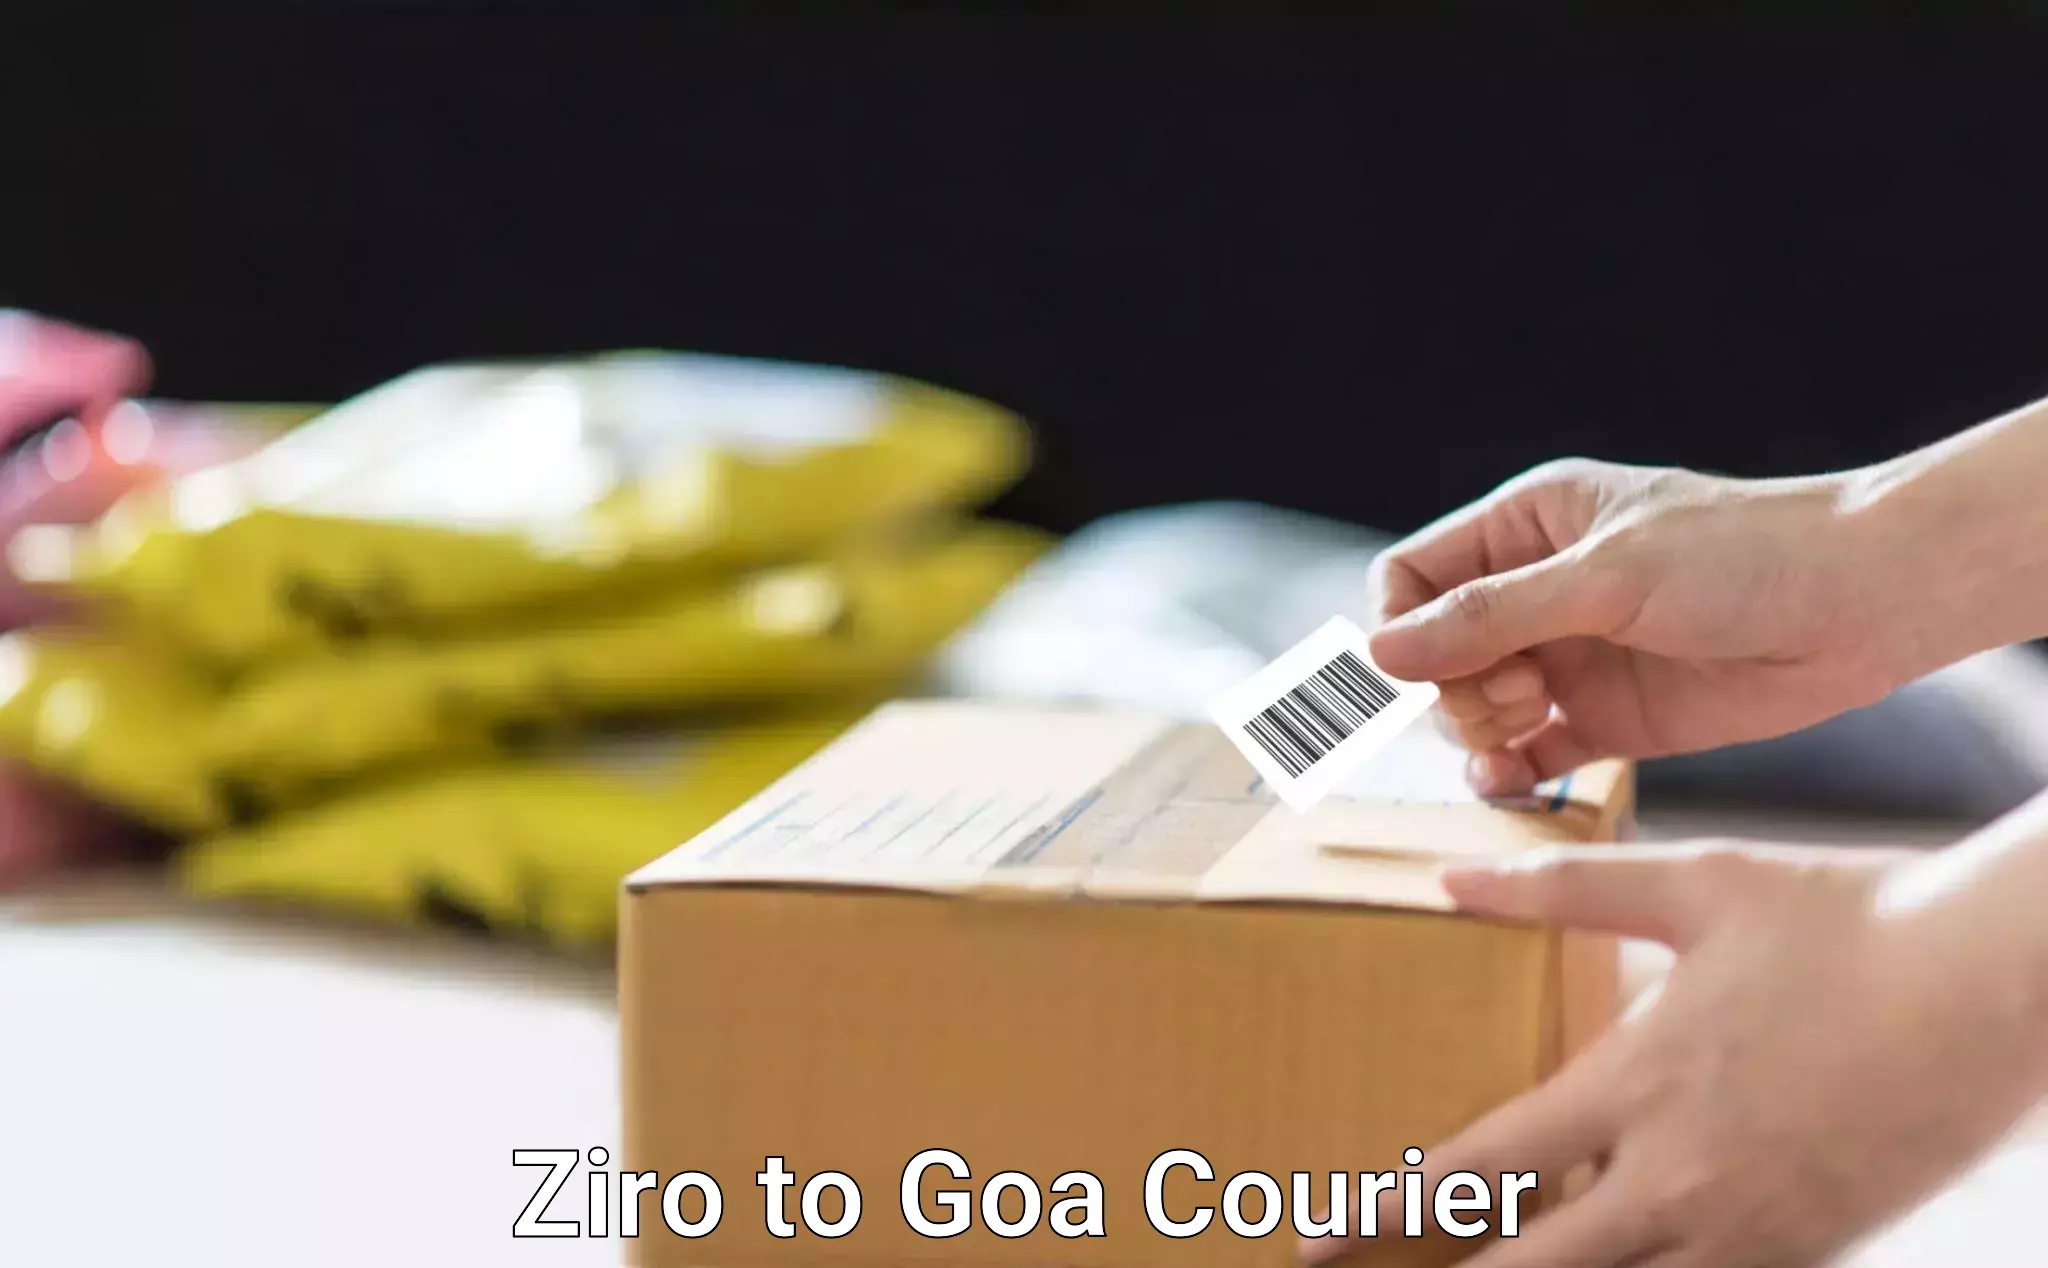 Cargo courier service Ziro to Goa